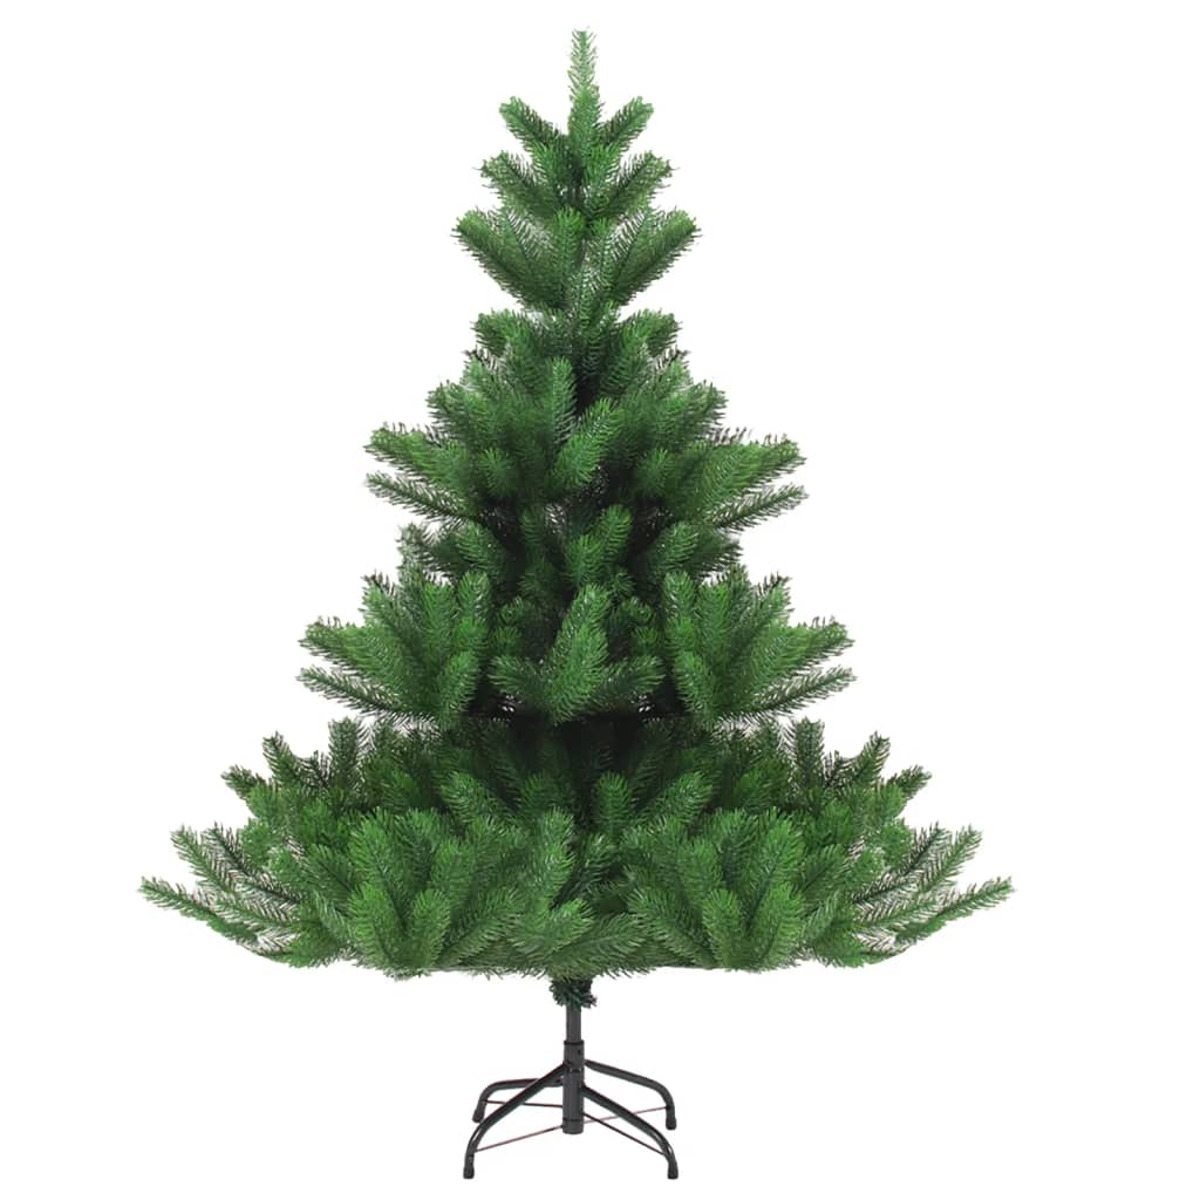 VIDAXL 3077644 Weihnachtsbaum